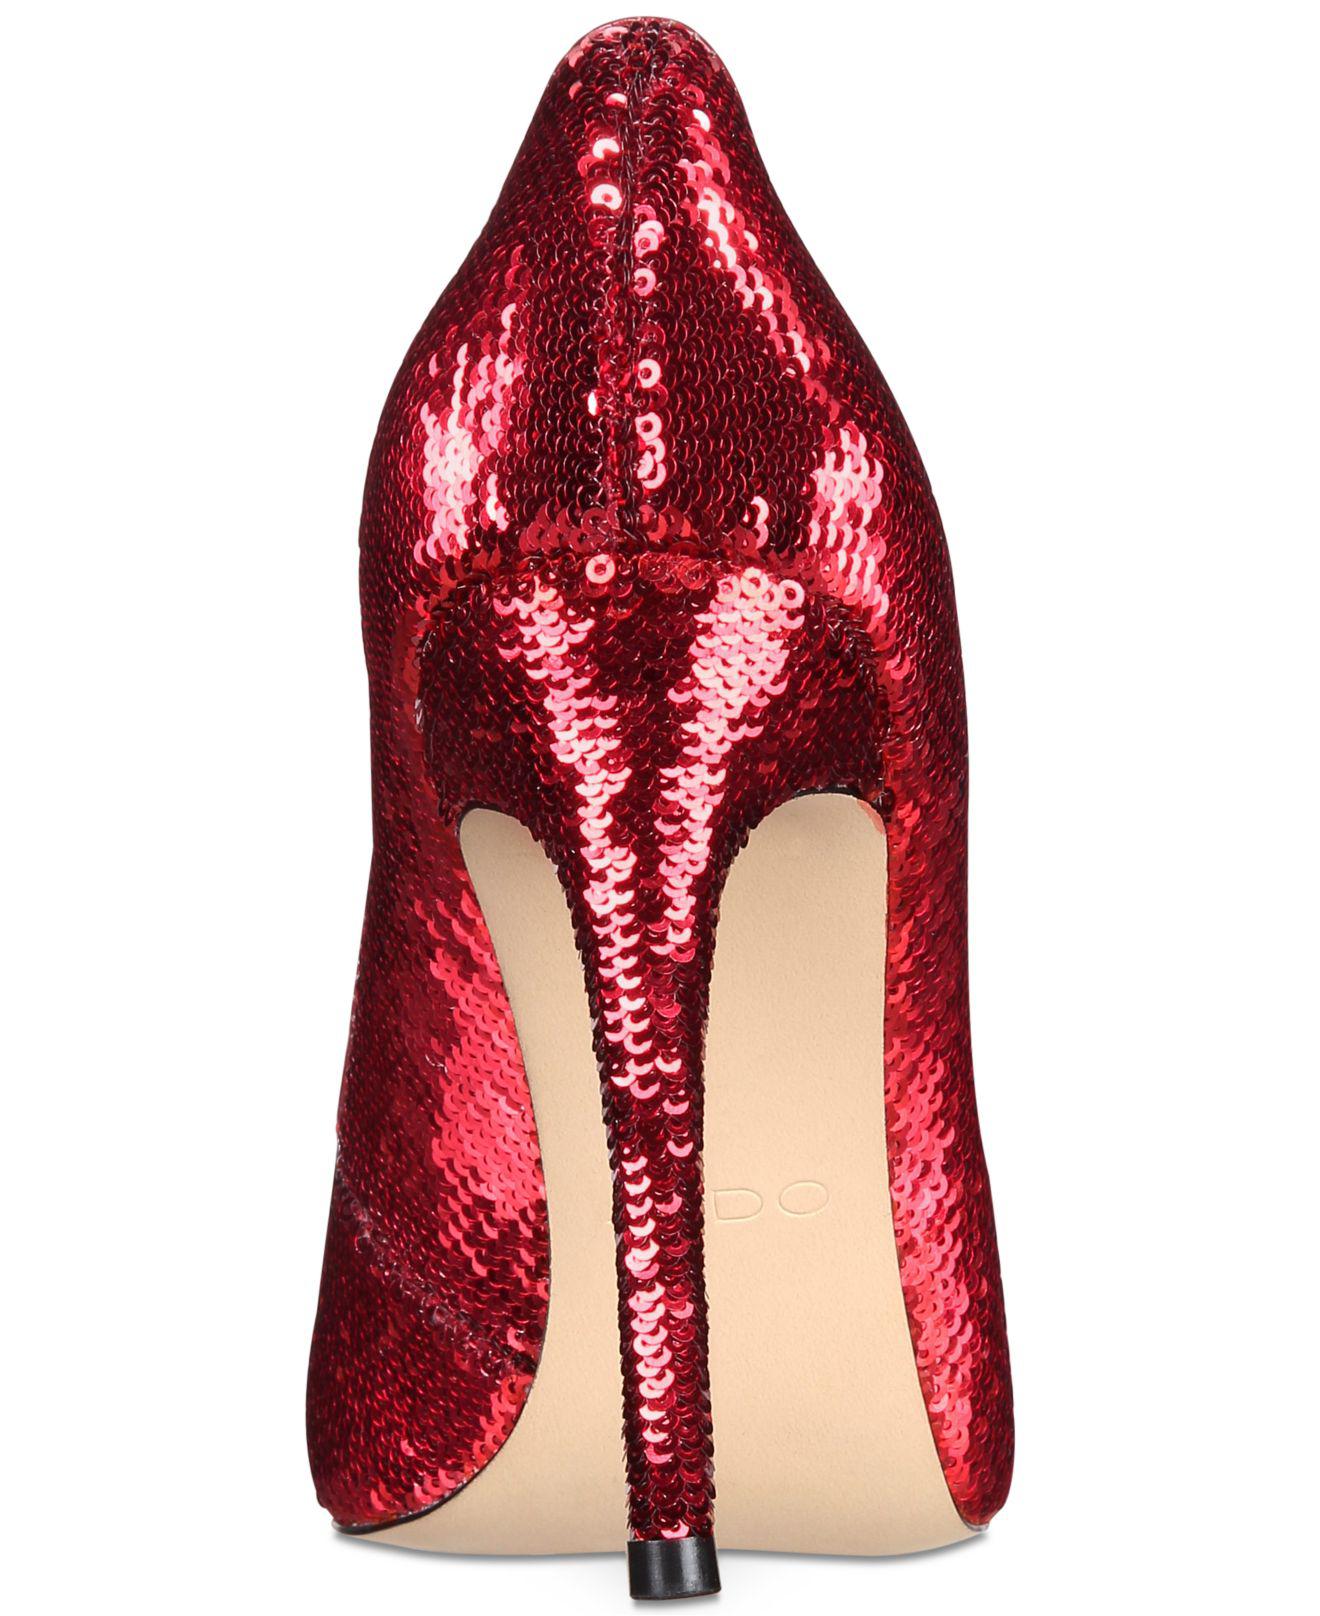 Buy > macy's sparkly heels > in stock